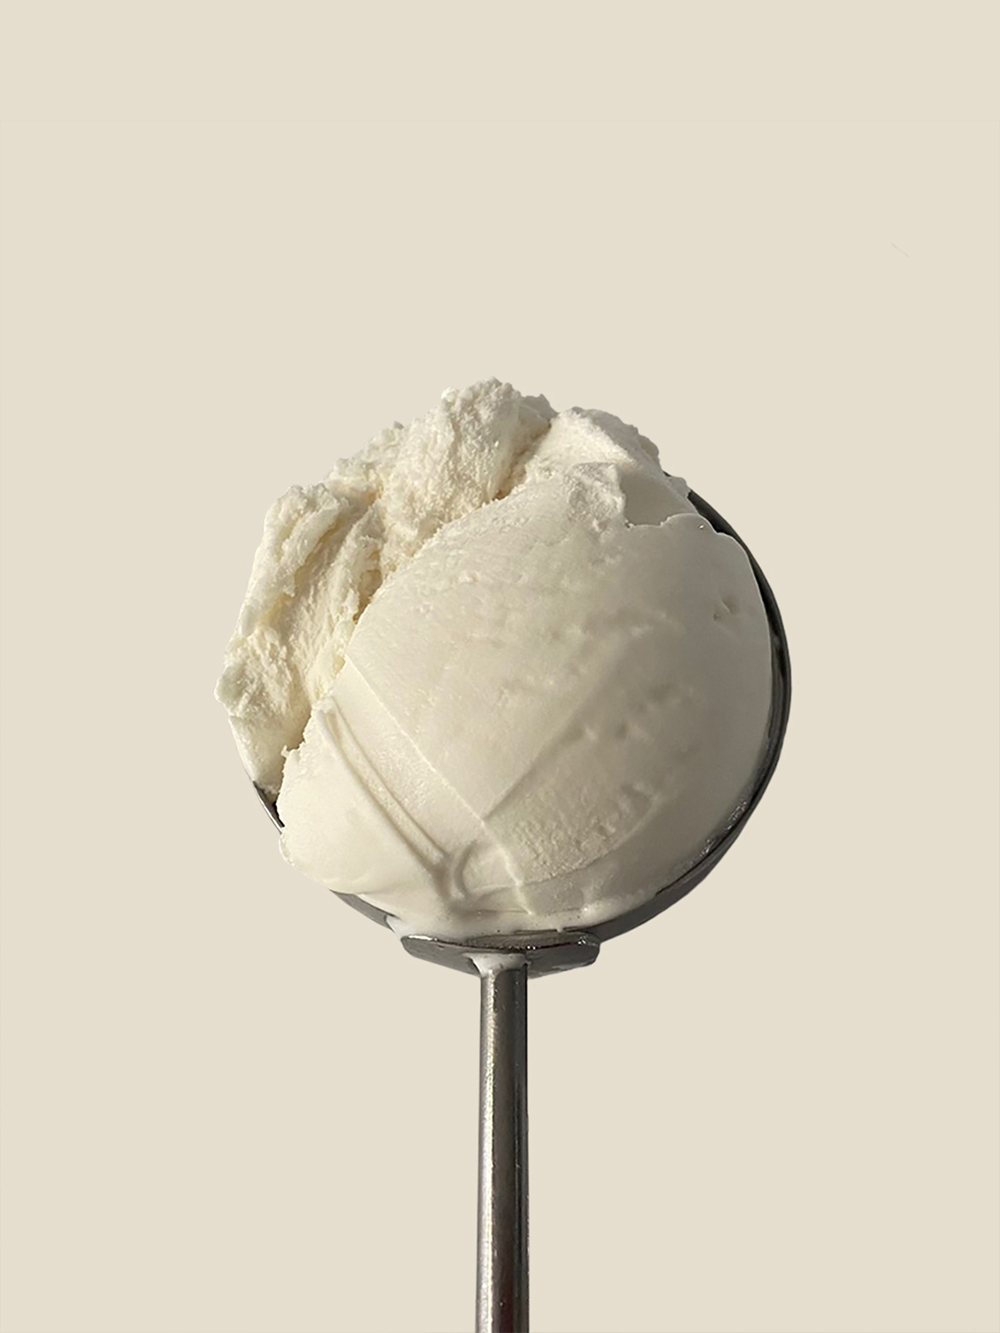 Diseño y desarrollo de identidad visual corporativa para Masiá Heladeros Artesanos. Detalle helado de nata.